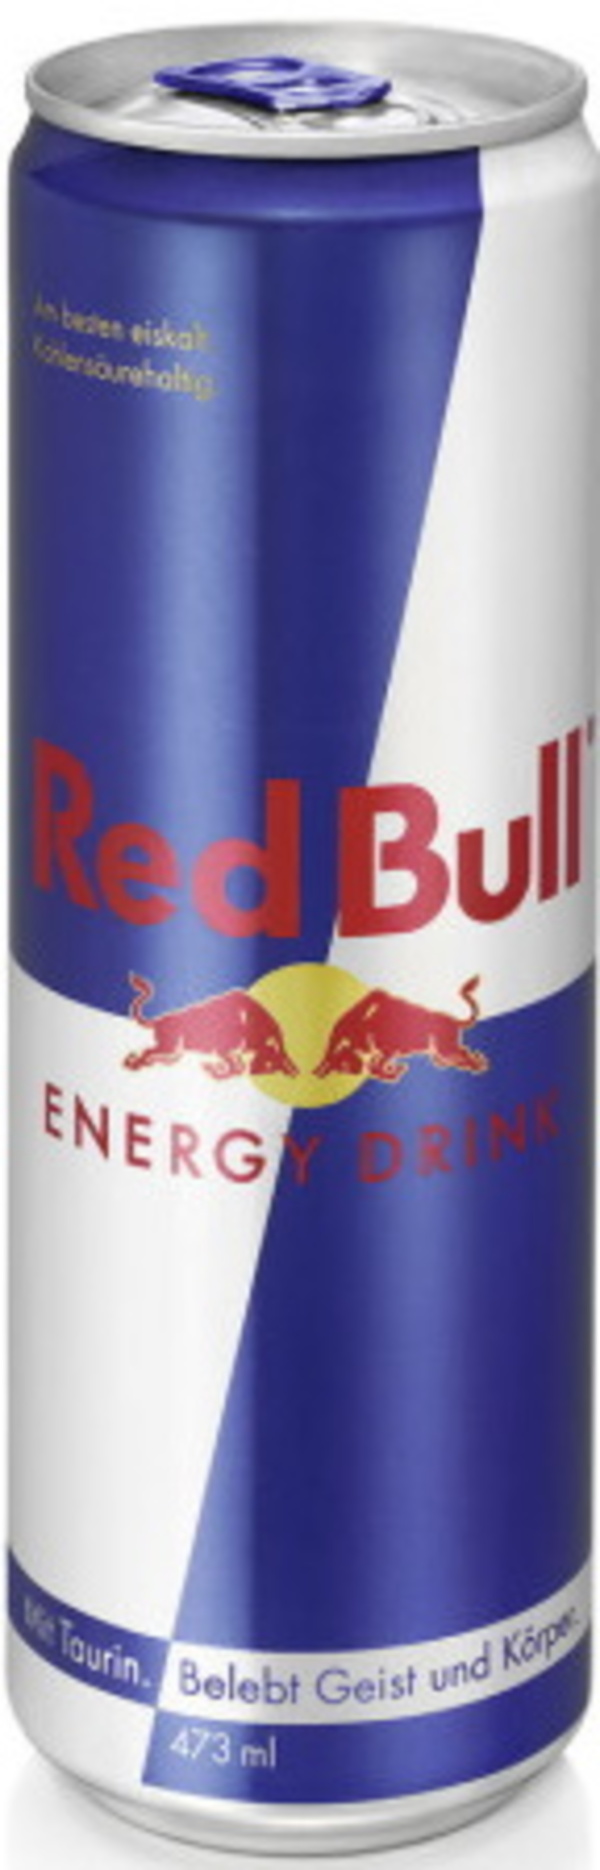 Bild 1 von Red Bull Energy Drink 0,473L